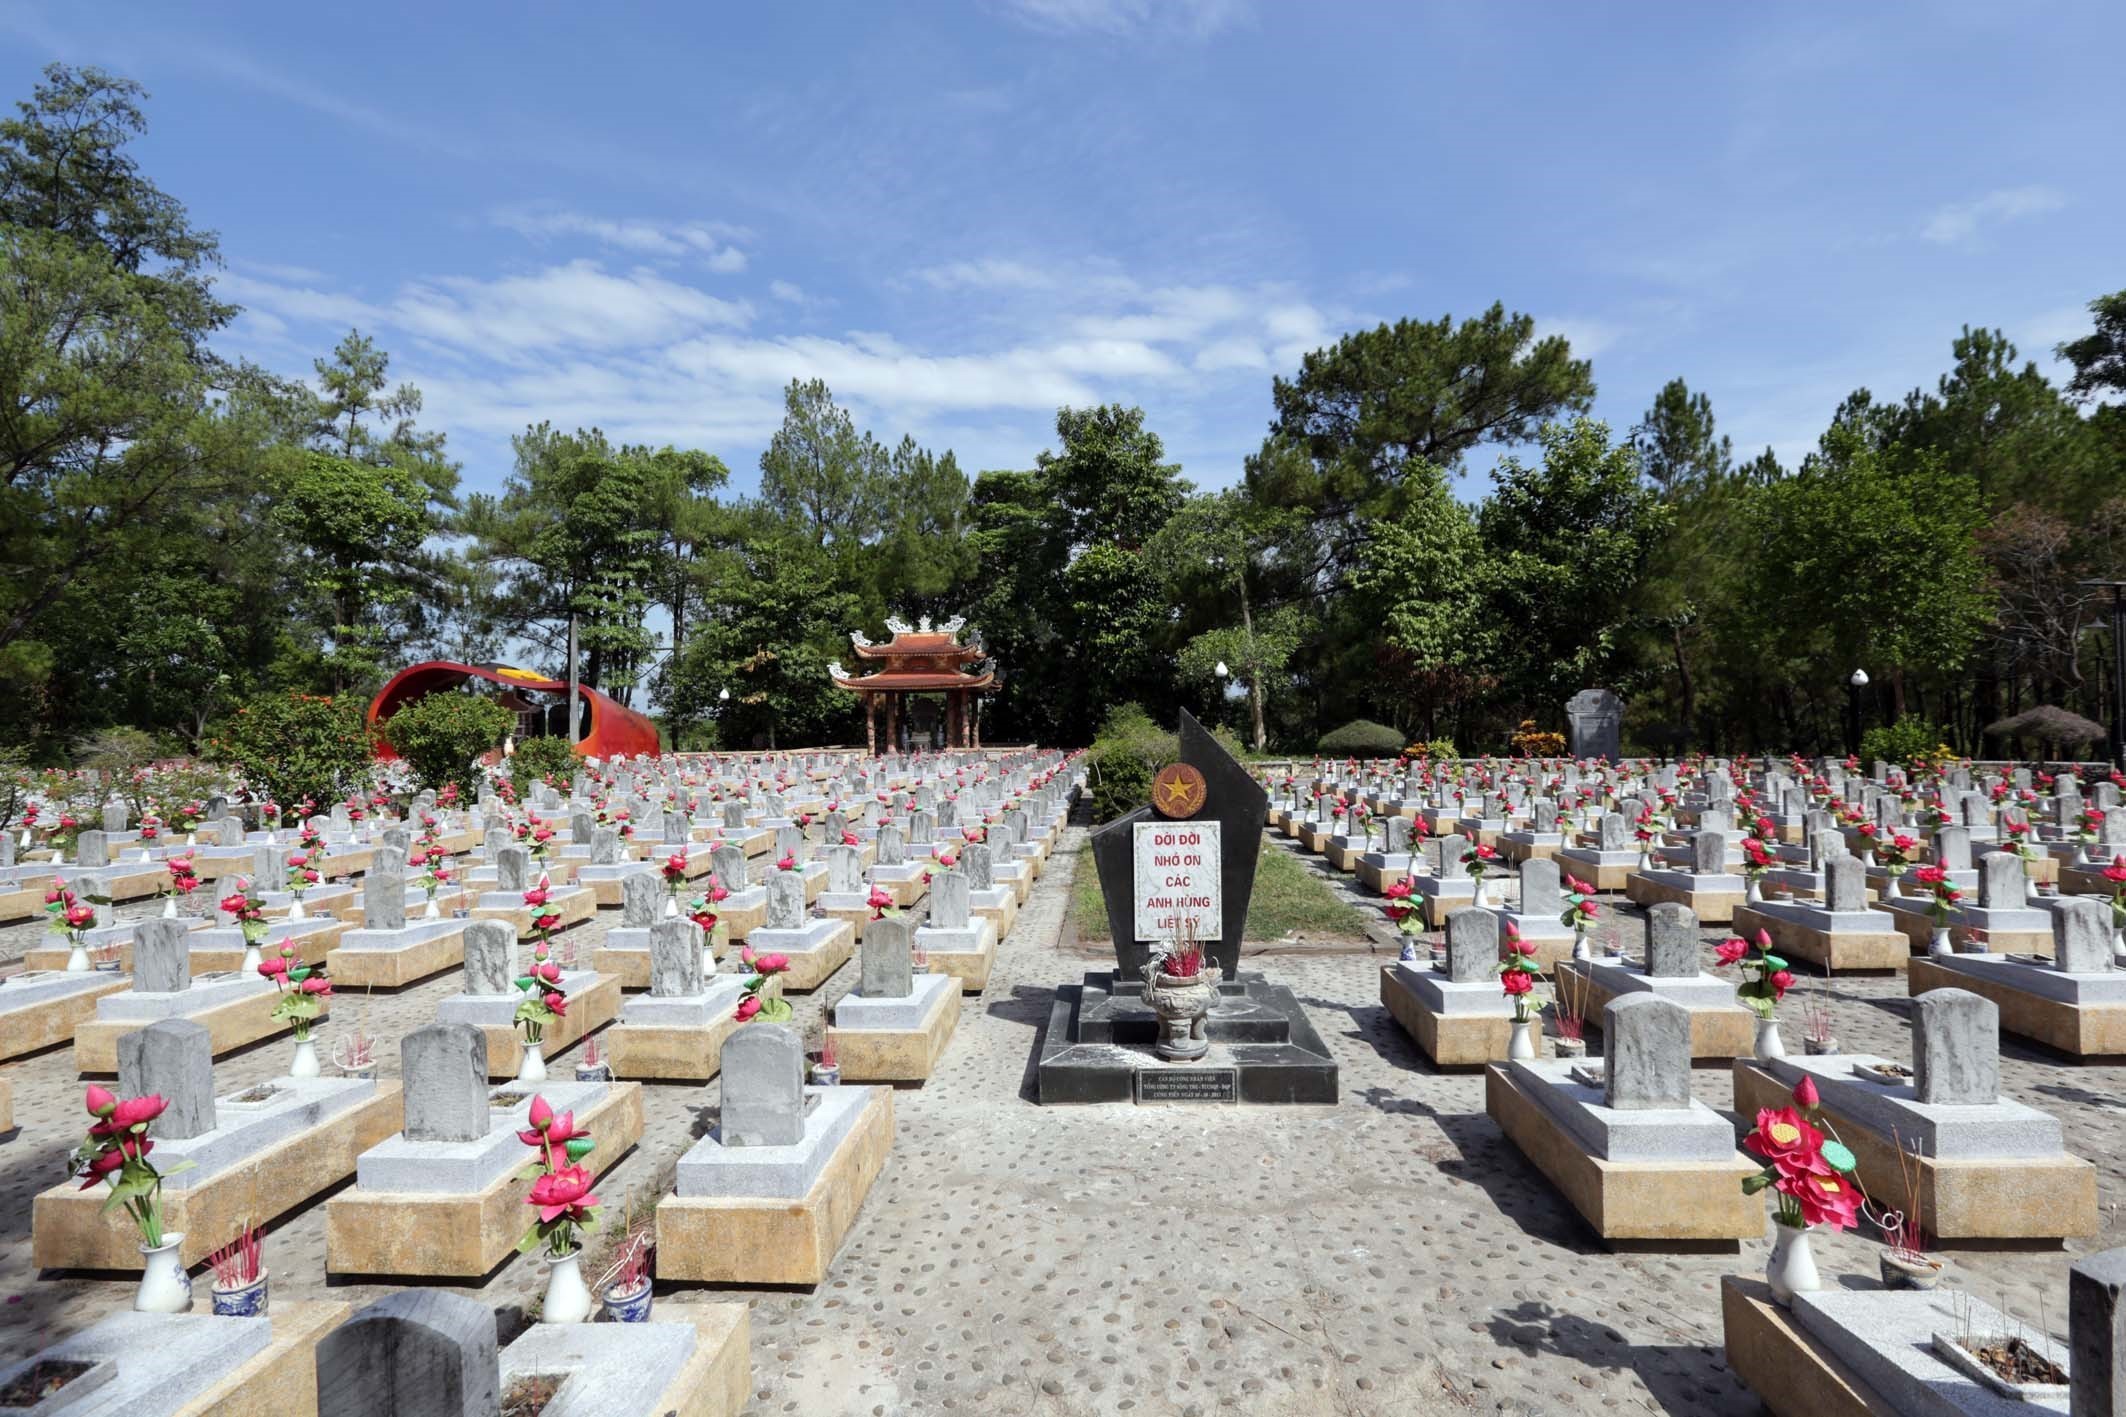  Nghĩa trang Liệt sỹ Quốc gia Trường Sơn. (Ảnh: Anh Tuấn/TTXVN)